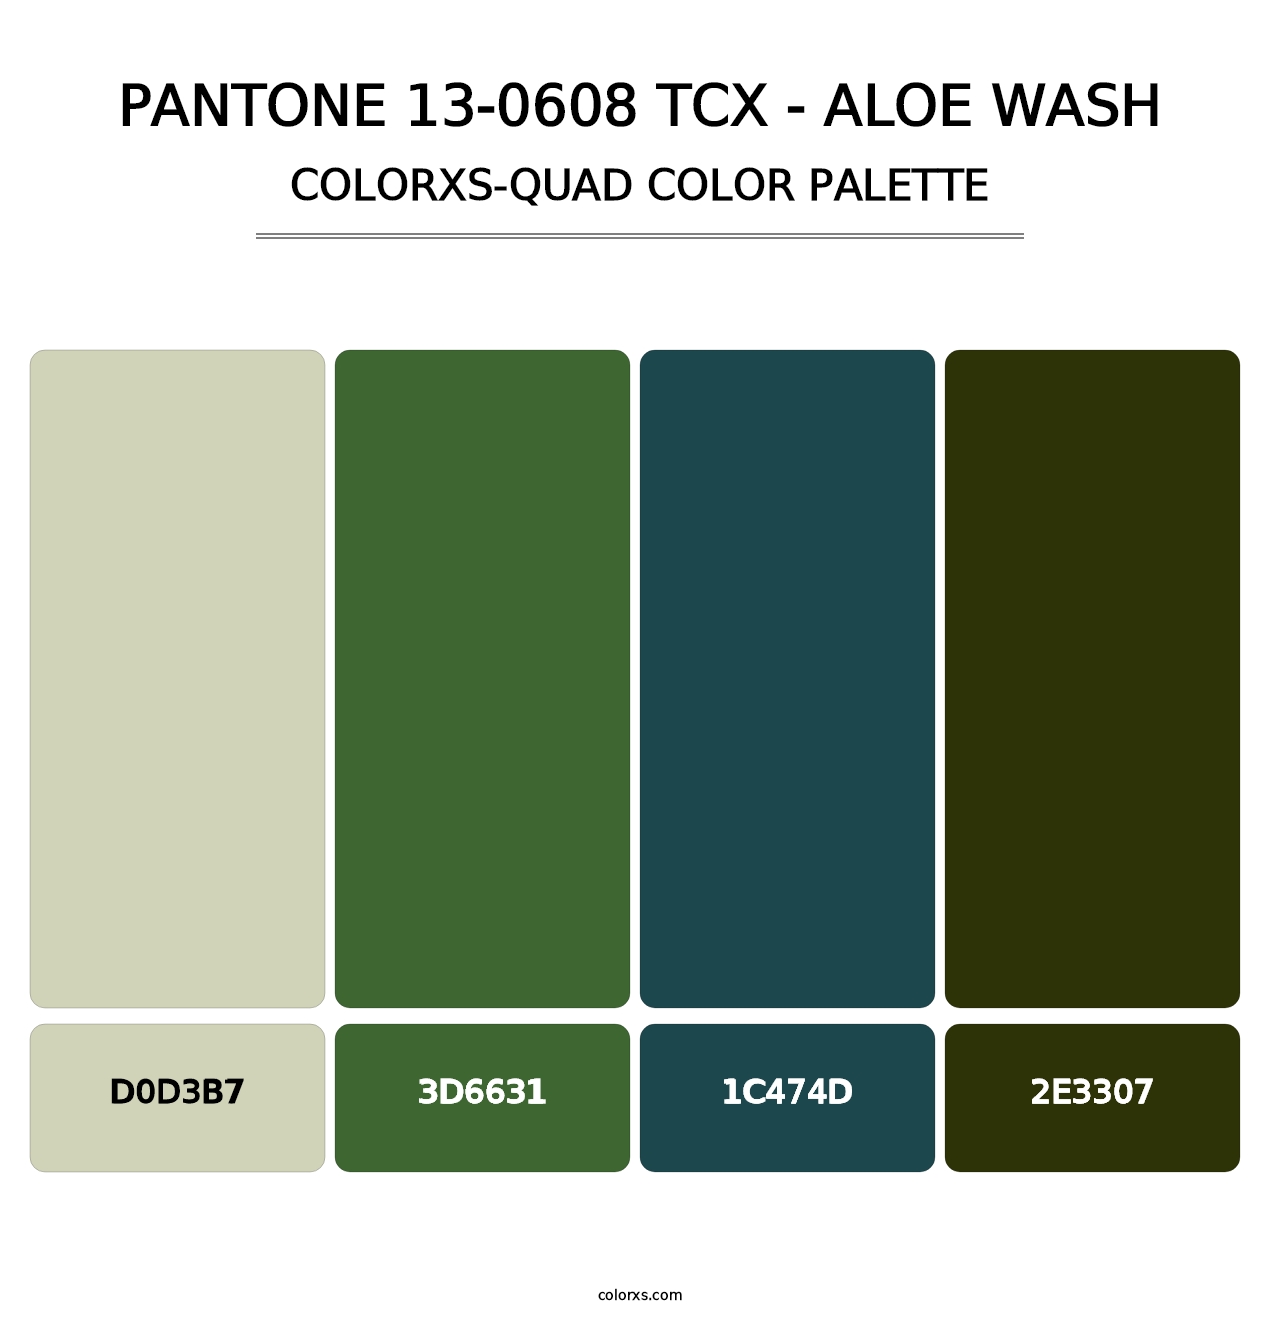 PANTONE 13-0608 TCX - Aloe Wash - Colorxs Quad Palette